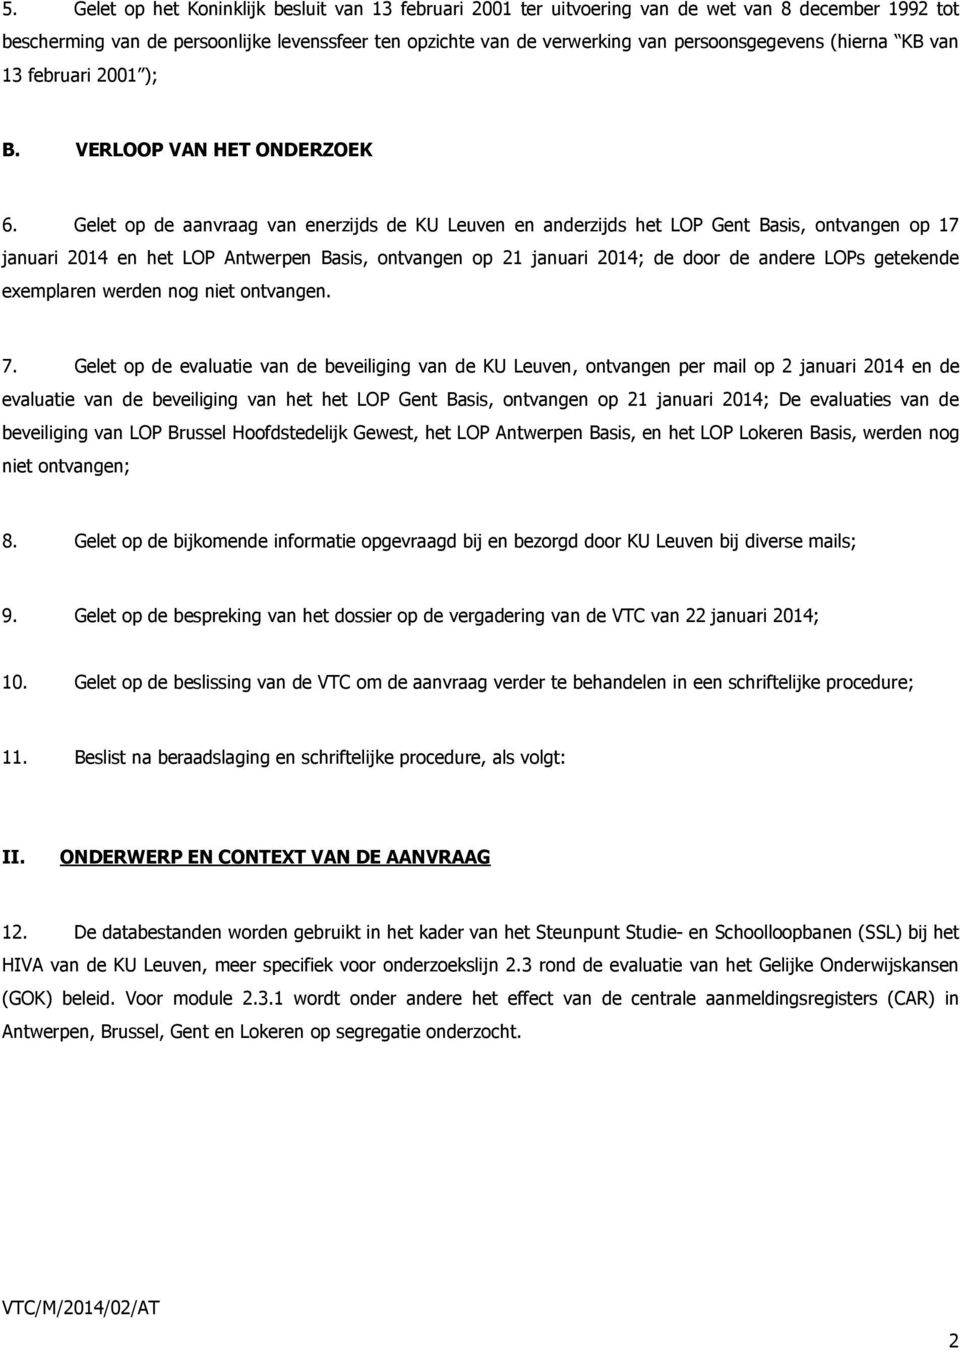 Gelet op de aanvraag van enerzijds de KU Leuven en anderzijds het LOP Gent Basis, ontvangen op 17 januari 2014 en het LOP Antwerpen Basis, ontvangen op 21 januari 2014; de door de andere LOPs